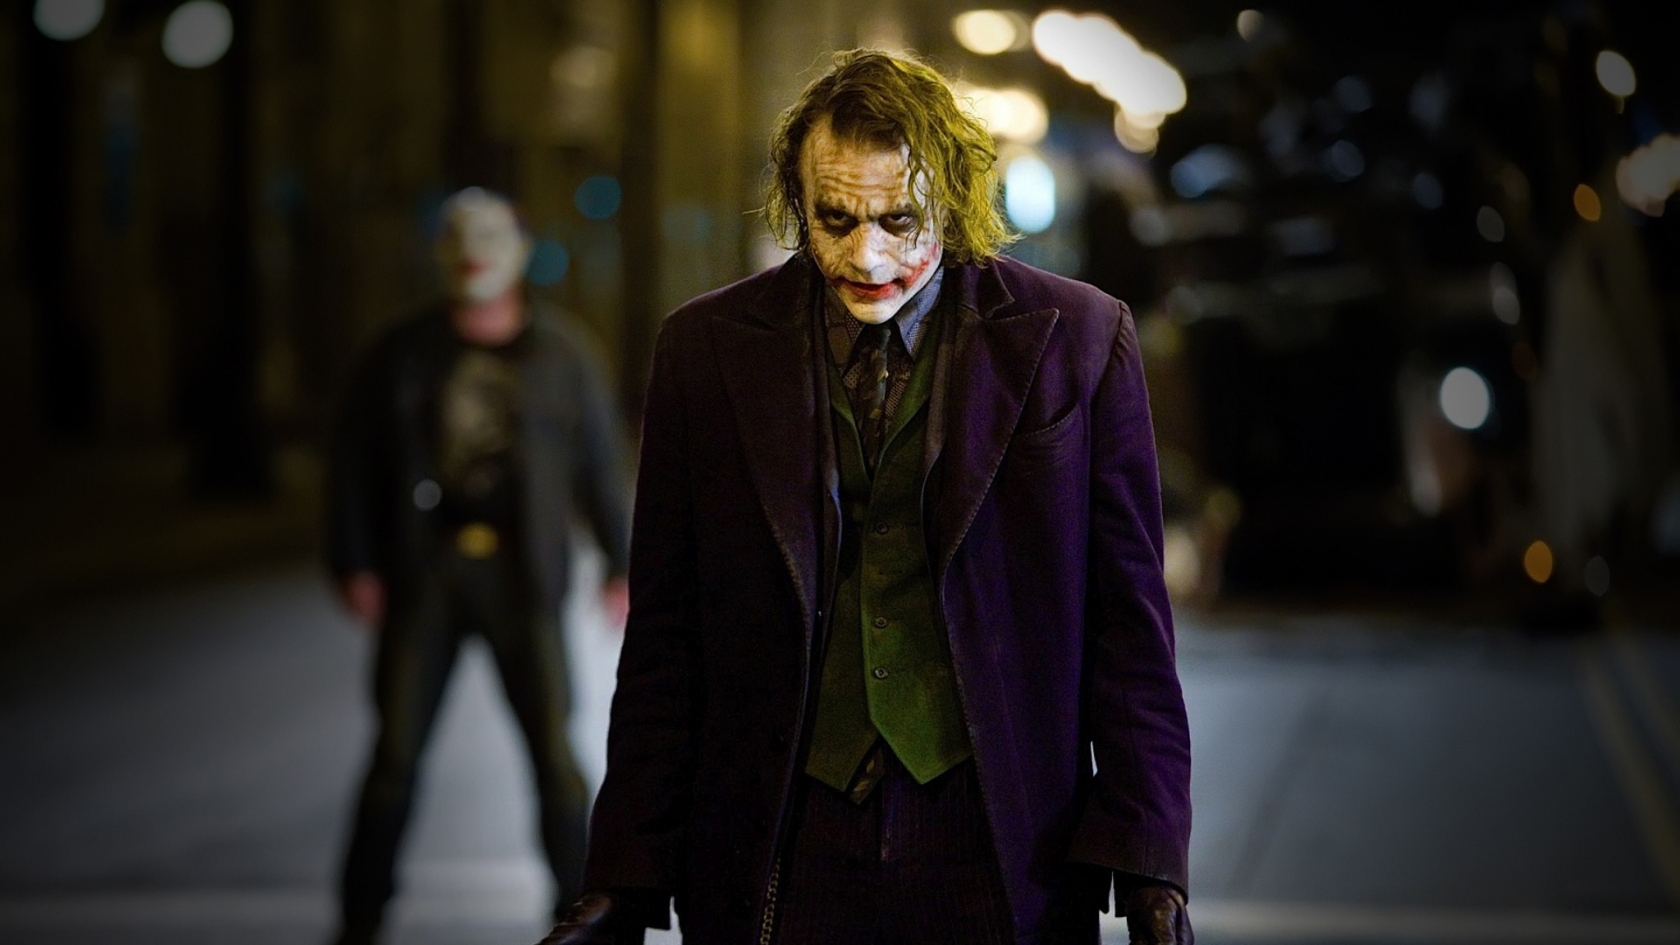 The Joker for 1680 x 945 HDTV resolution